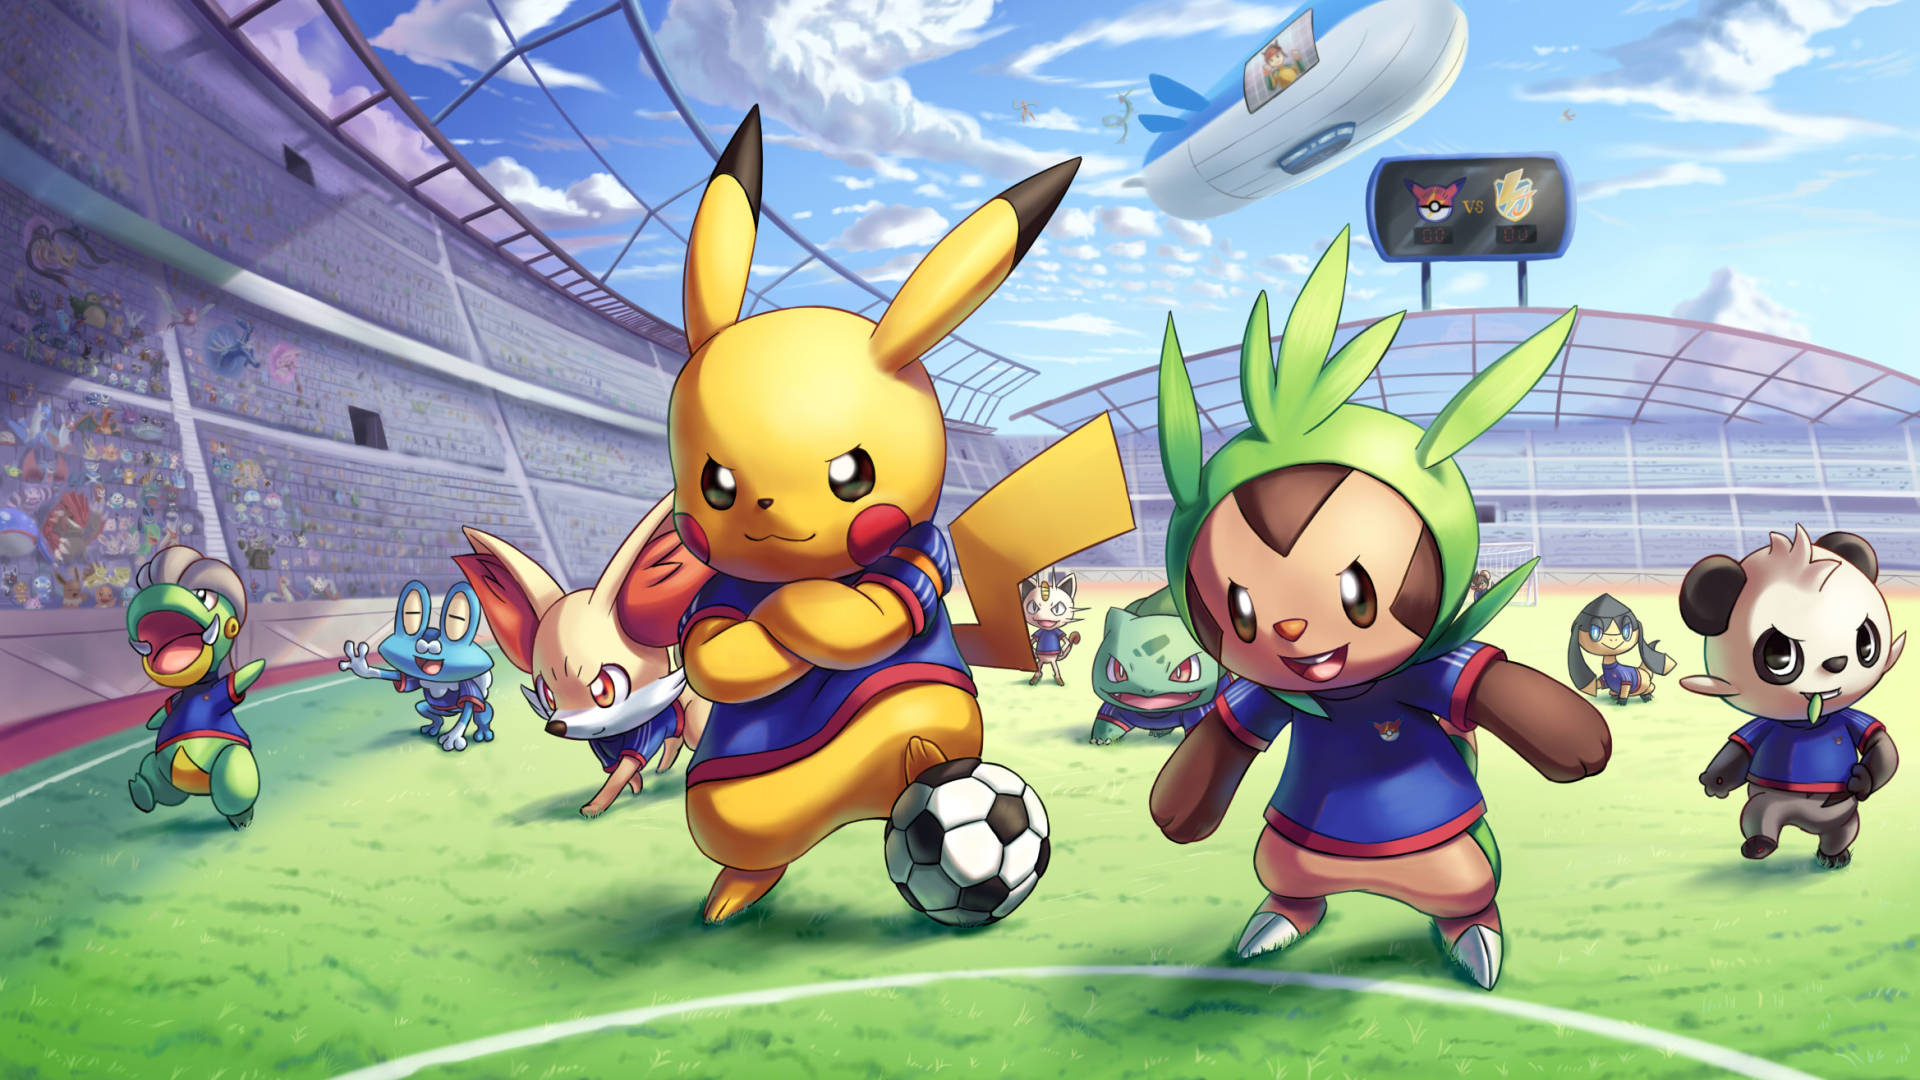 1920x 1080 Partido De Fútbol De Pokémon Anime. Fondo de pantalla